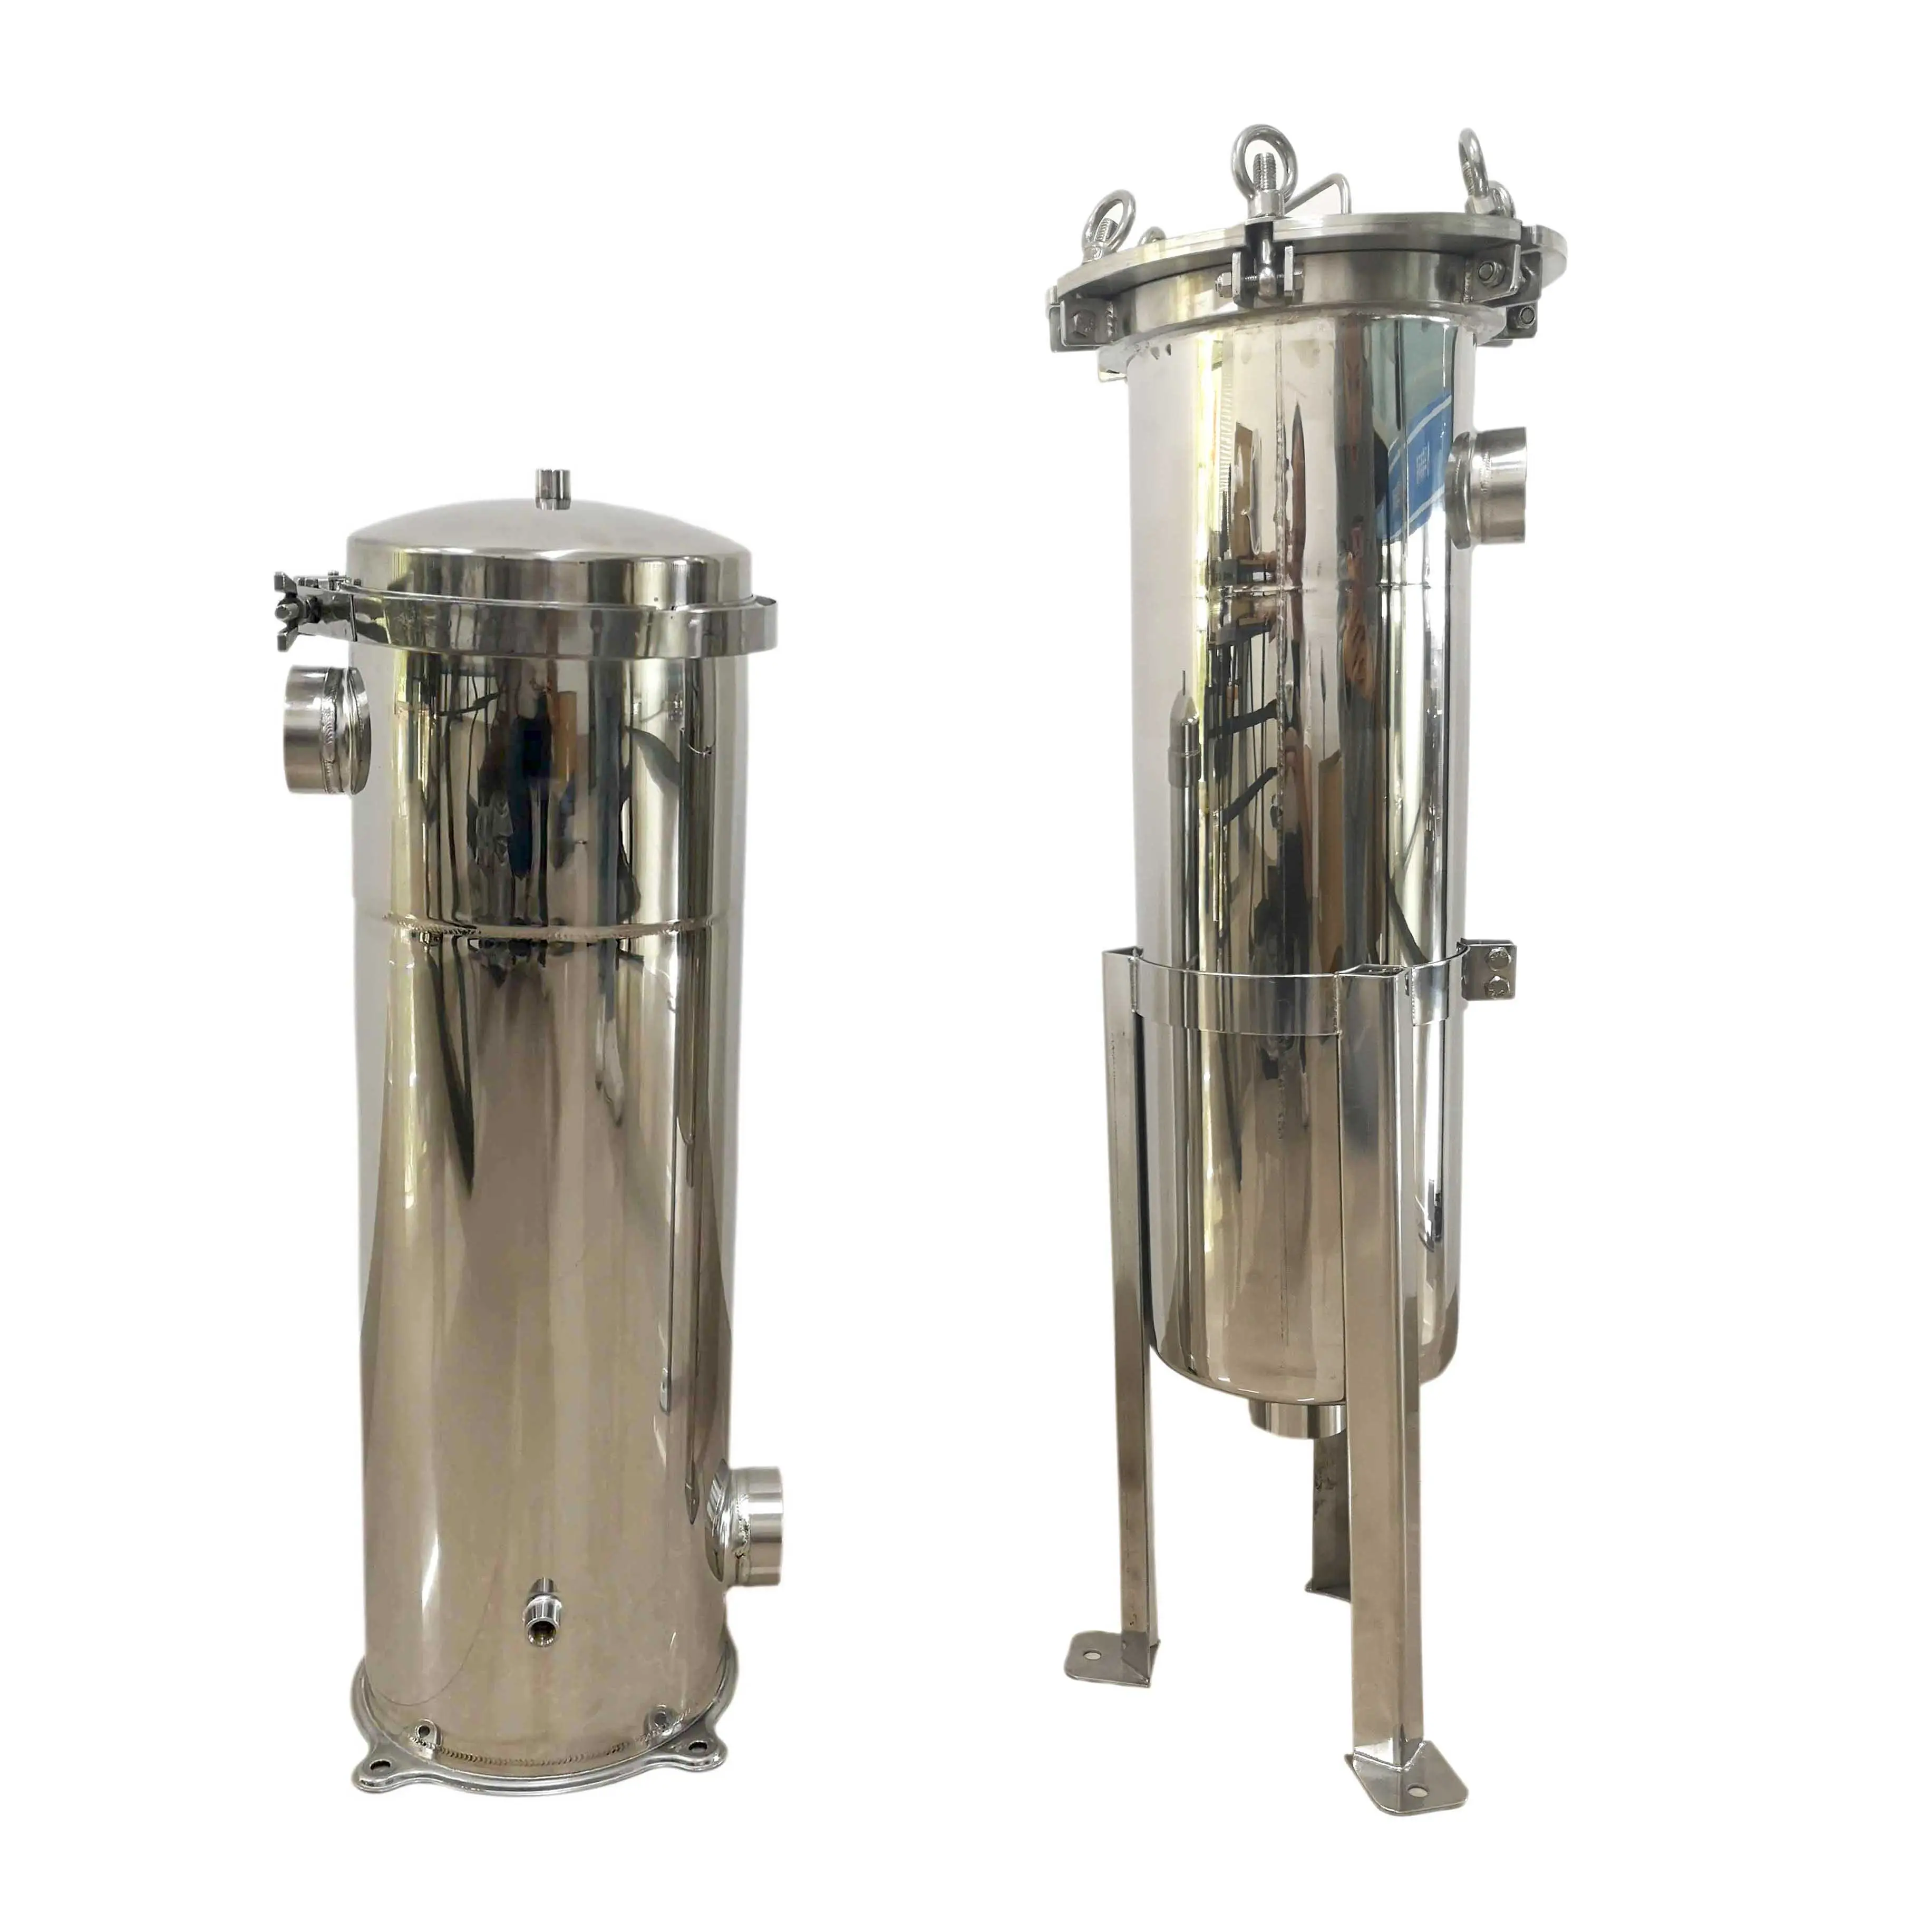 Purewell Pro Schwerkraft-Edelstahl-Wasser filtration mit zwei Elementen Edelstahl-Wasser aufbereitung system für zu Hause